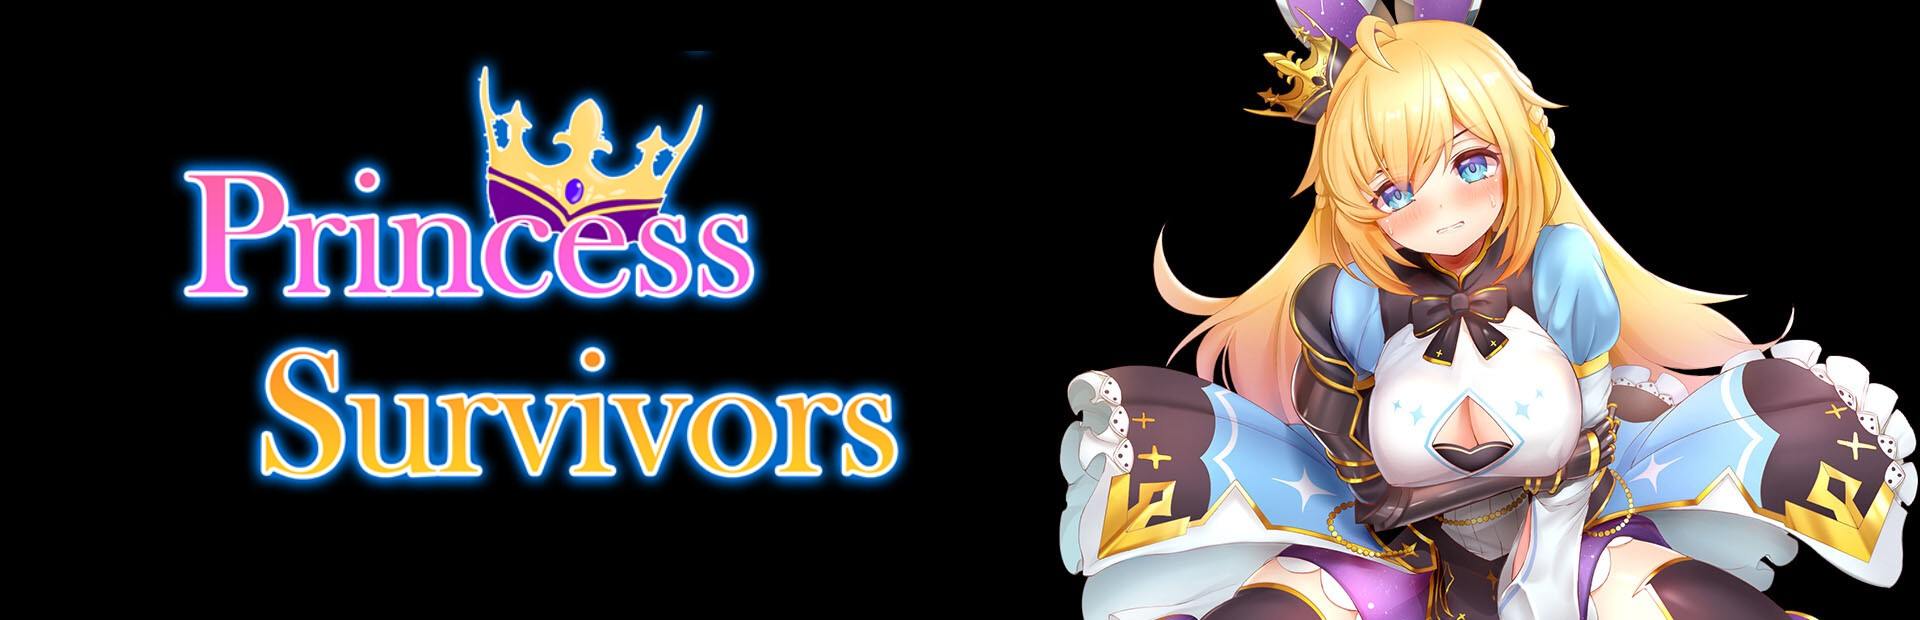 Princess Survivors [azucat] Adult xxx Game Download